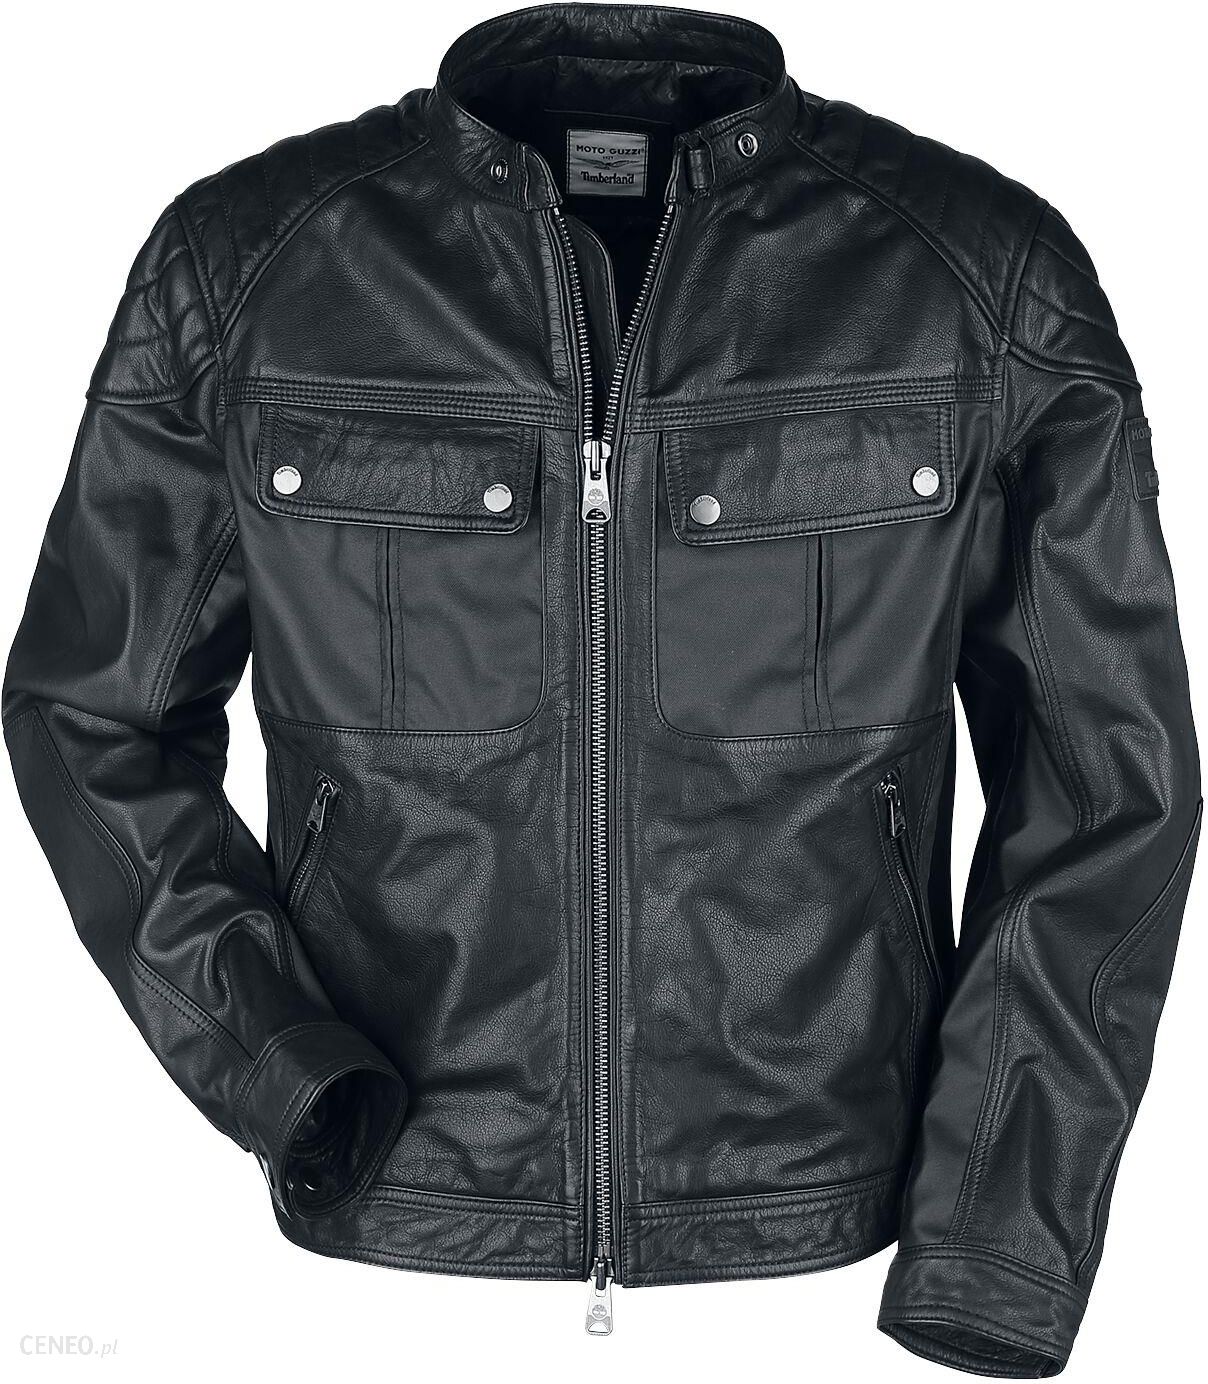 Timberland - Moto Guzzi Leather Jacket - Kurtka skórzana - czarny ...